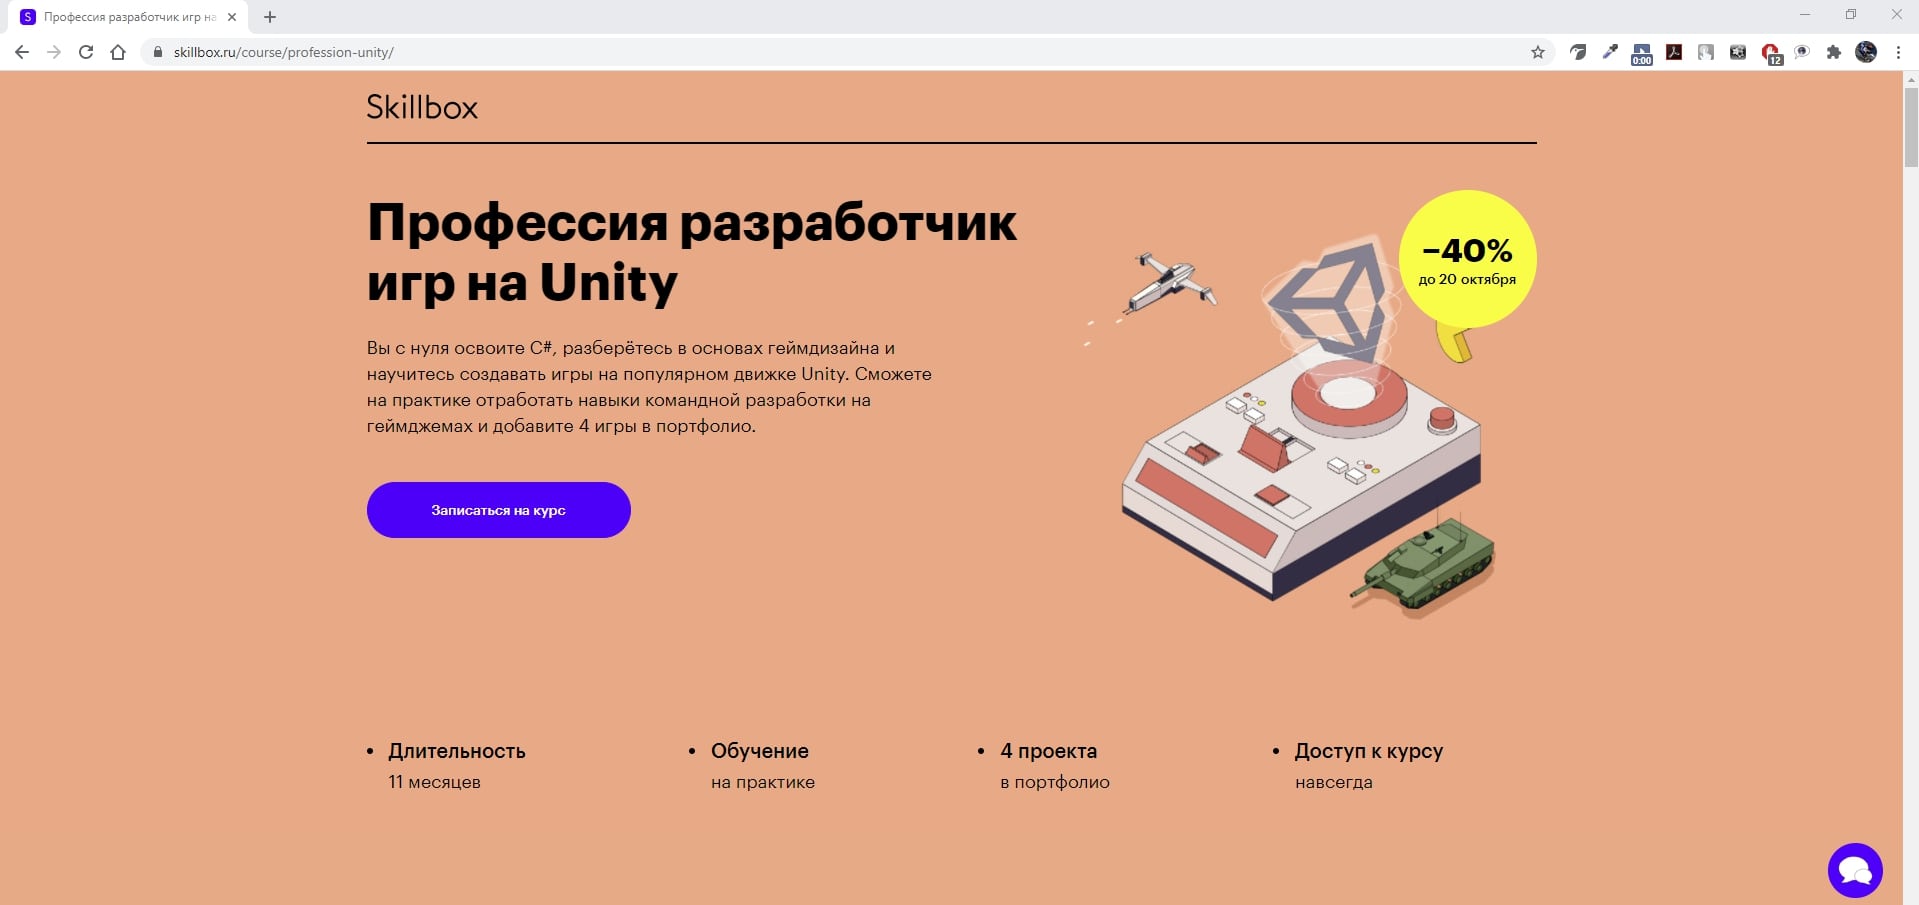 Курсы разработки на unity. Курсы Юнити. Разработчик игр на Unity с нуля Skillbox. Курс по программированию на Unity.